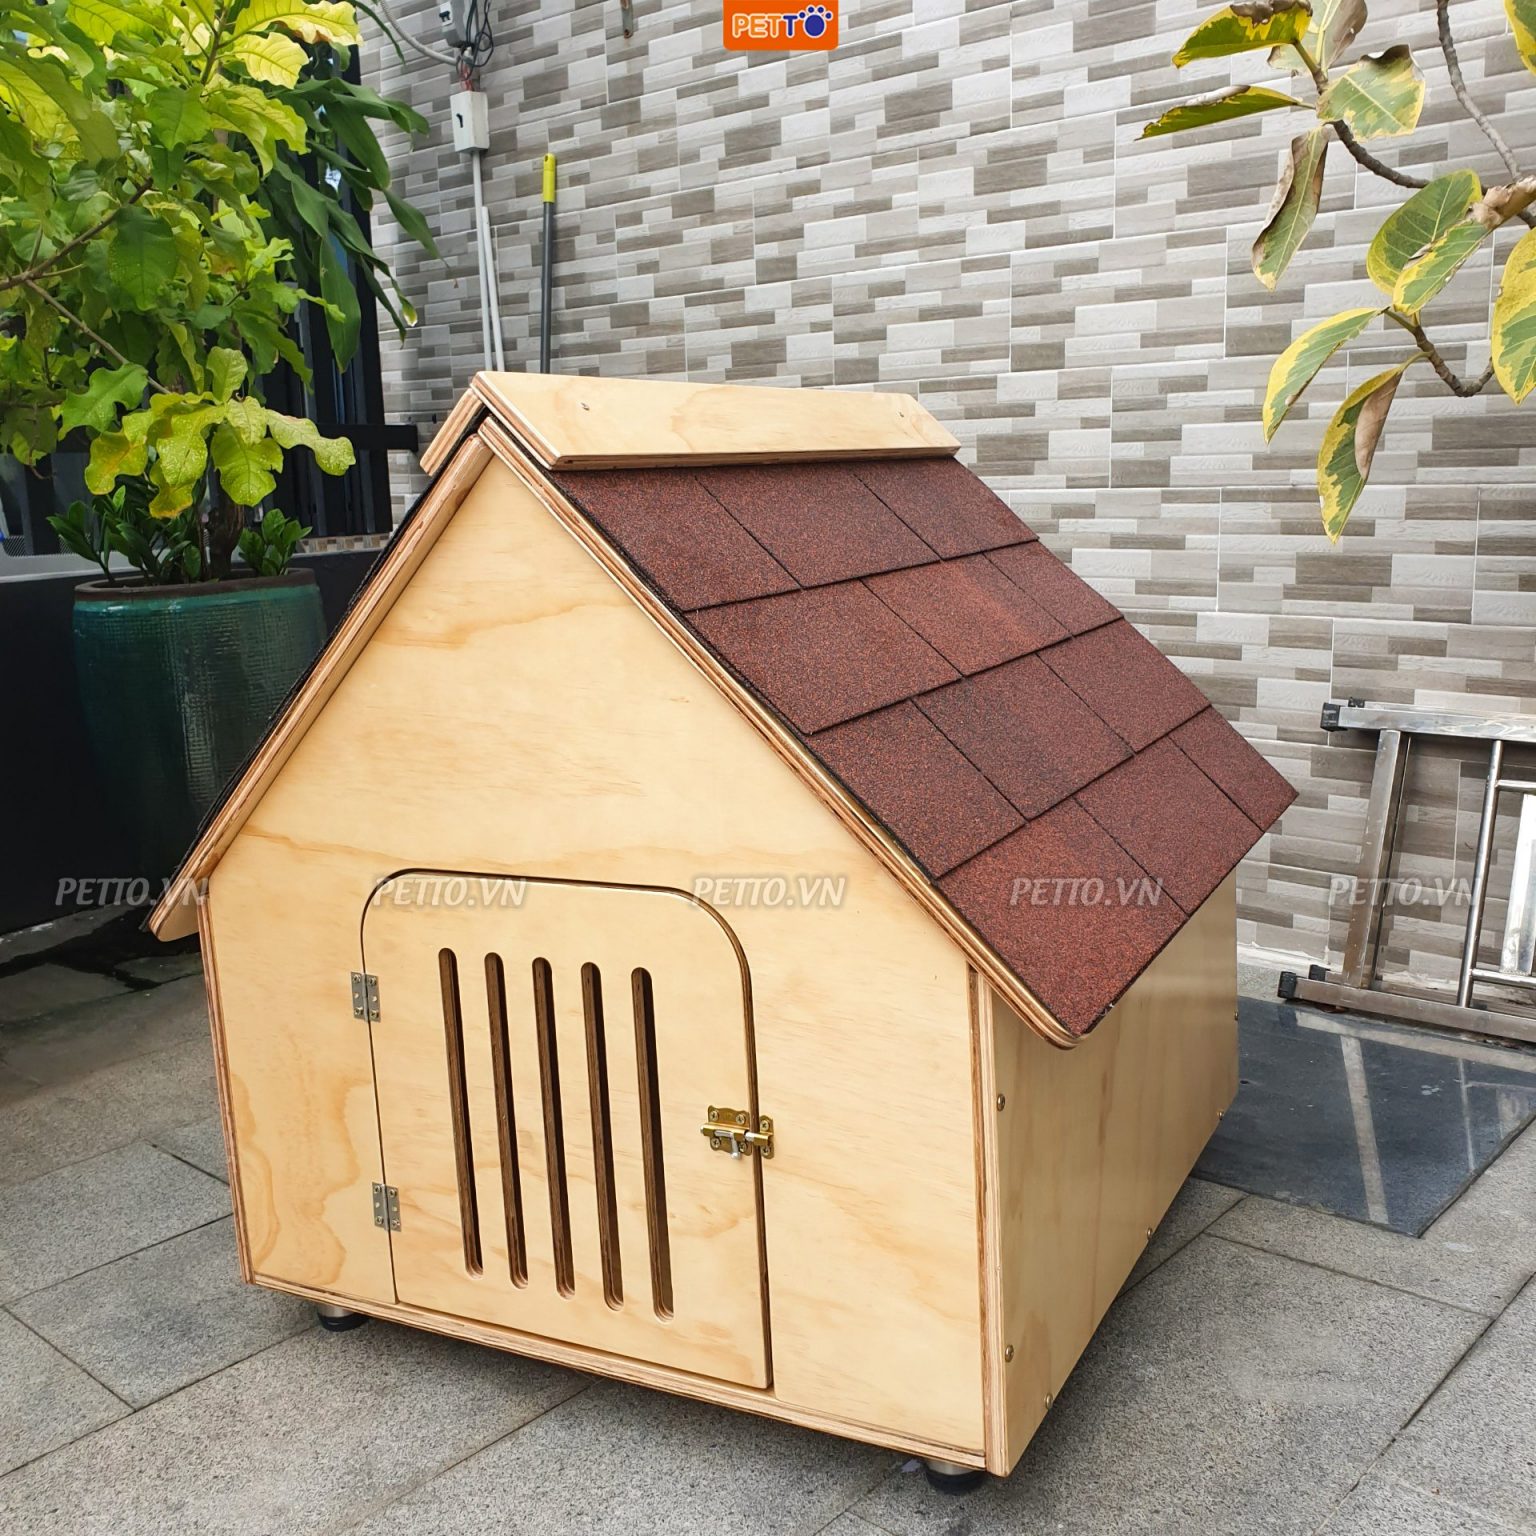 Nhà cho chó ngoài trời bằng gỗ DH012 (1)